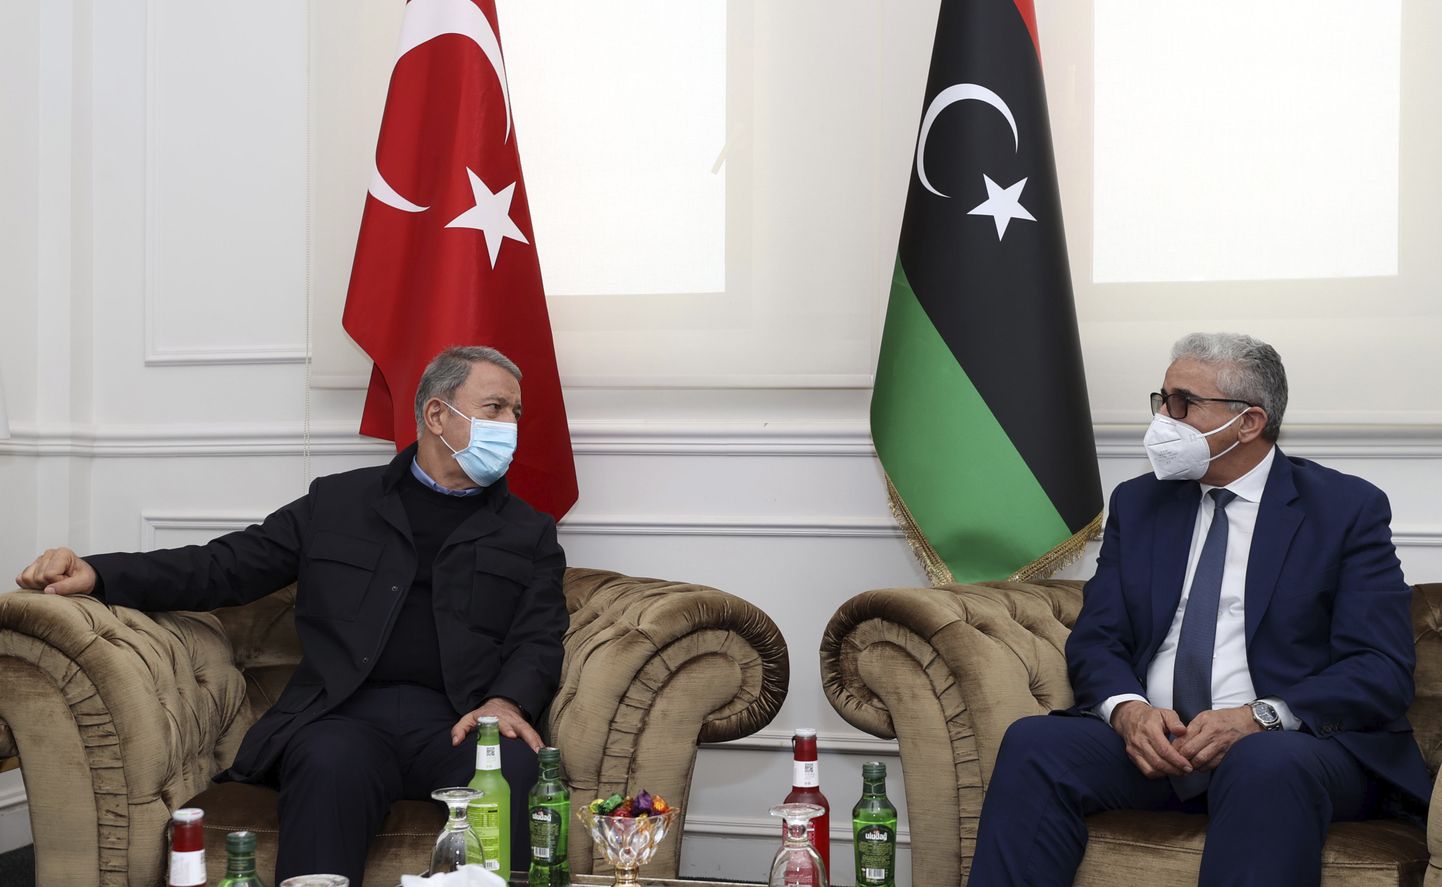 Türgi kaitseminister Hulusi Akar (vasakul) ja Liibüa rahvusliku leppimise valitsuse kõrgema riiginõukogu esimees Khalid al-Mishri (paremal) Tripolis kõnelusi pidamas.